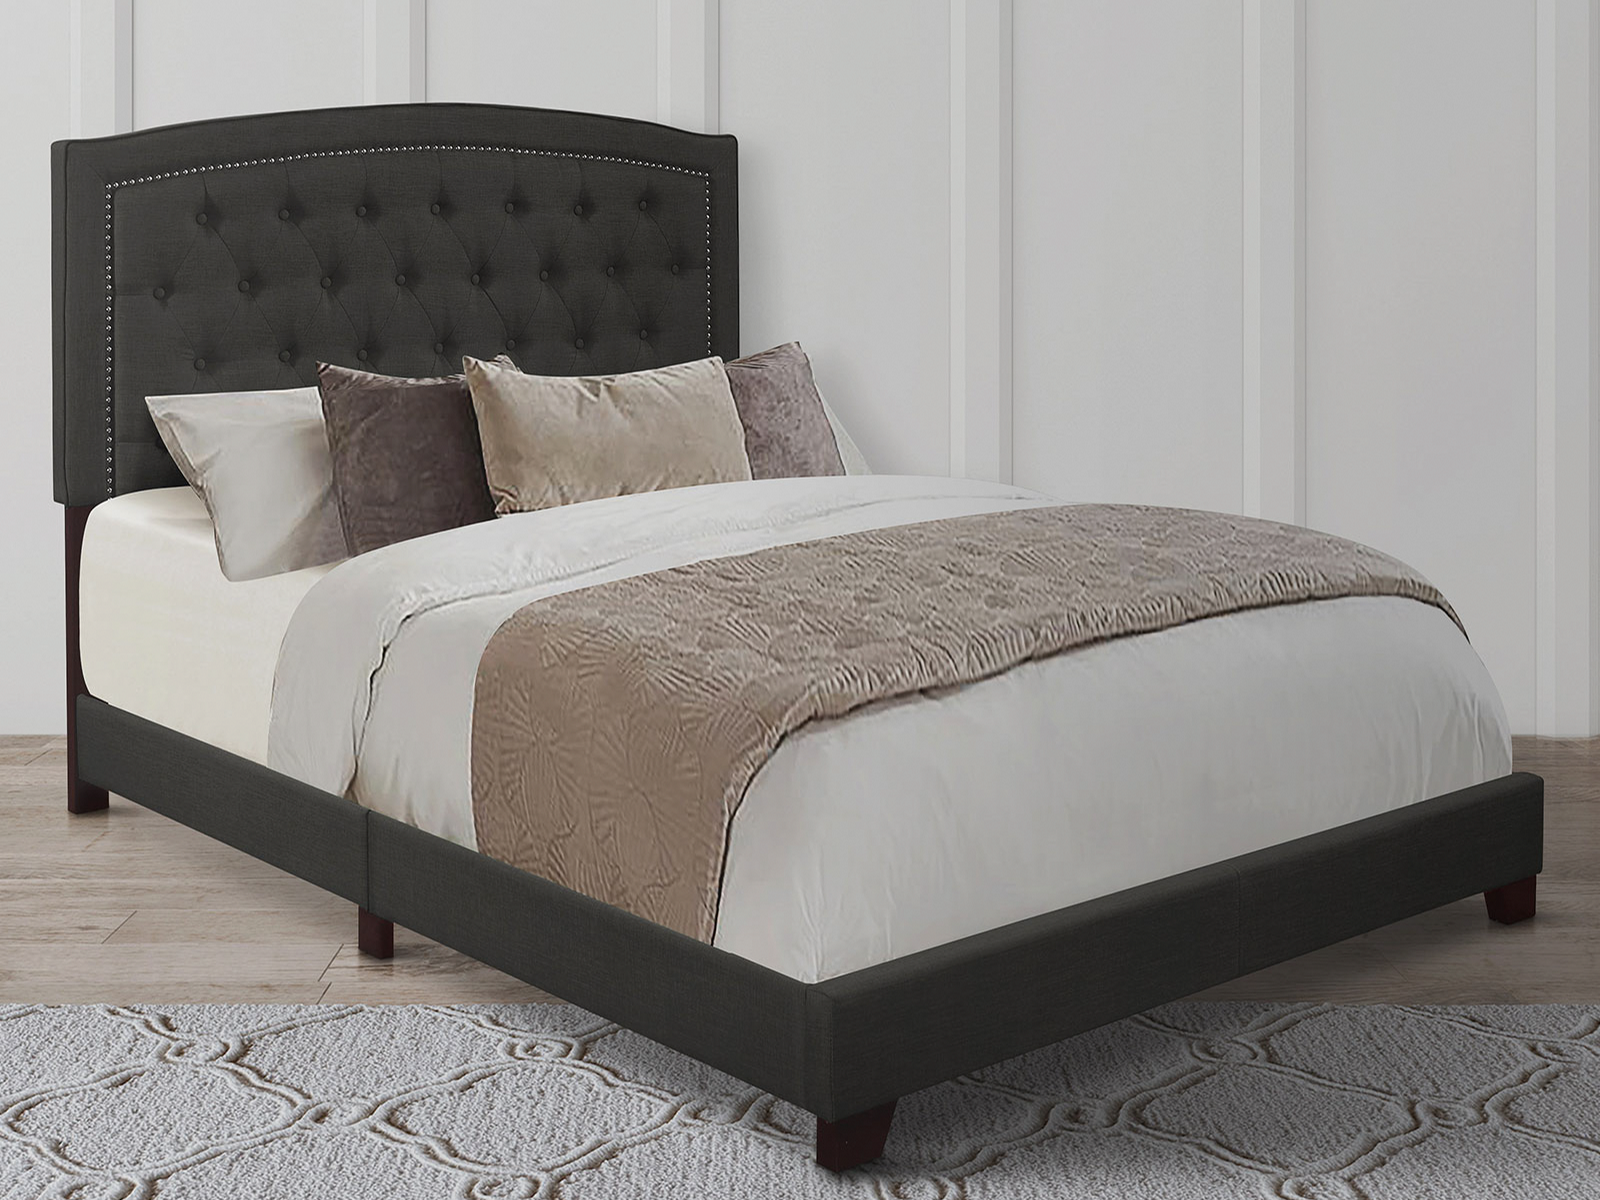 Homelegance Upholstered Bed Set | Queen | Linden Bed Frame & Headboard | Dark Gray